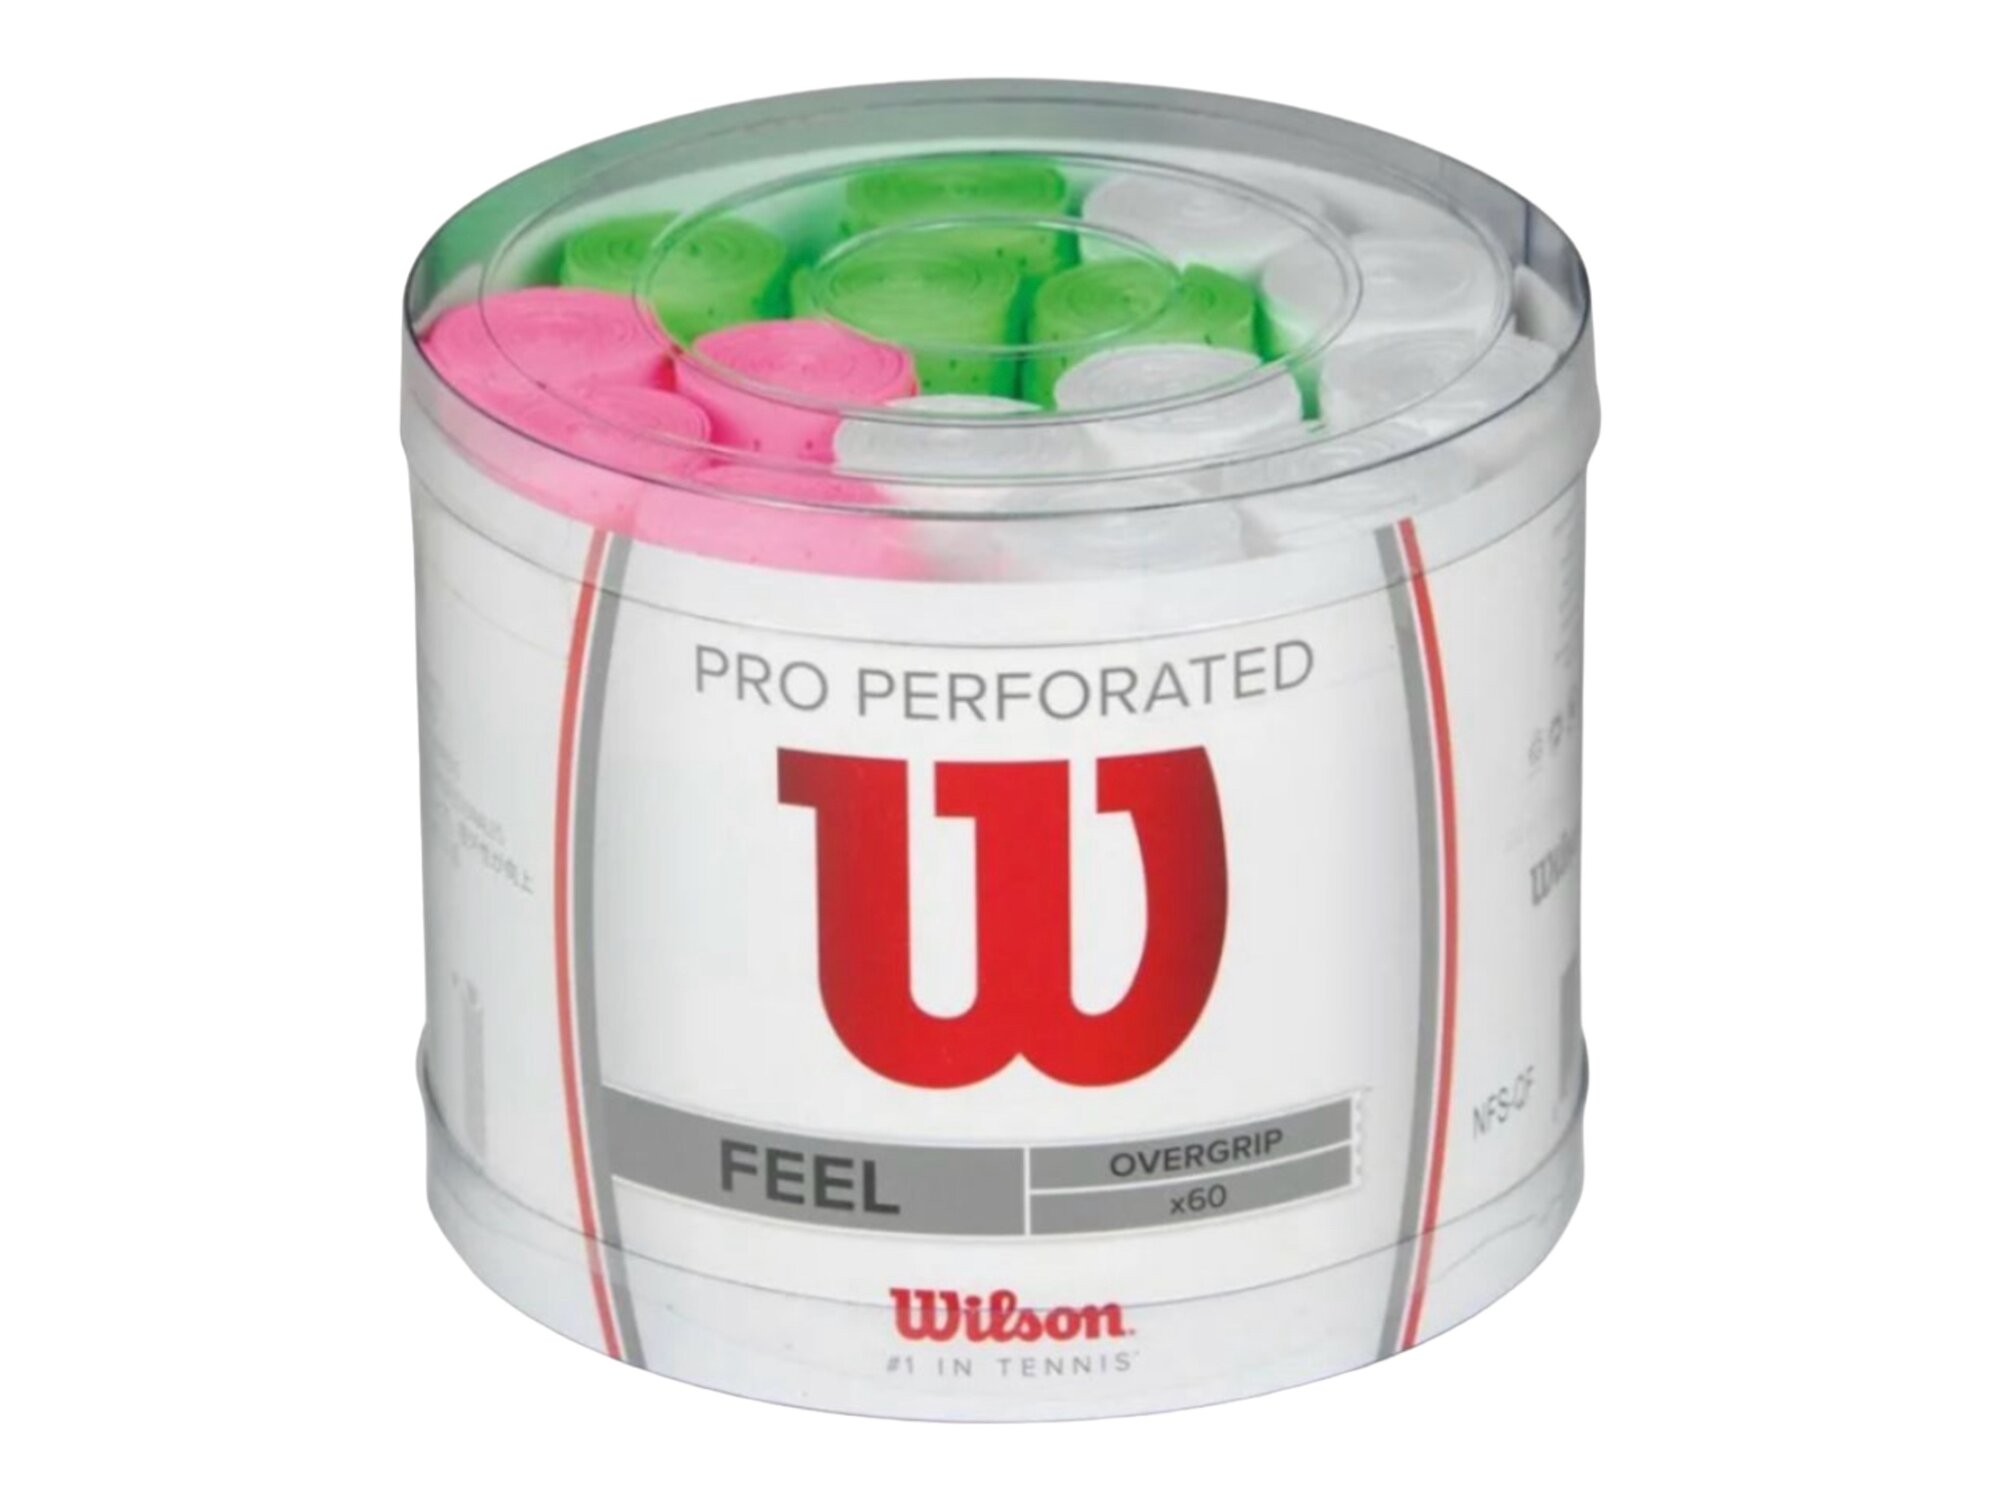 Намотка верхняя Wilson PRO Perforated Feel 60 штук